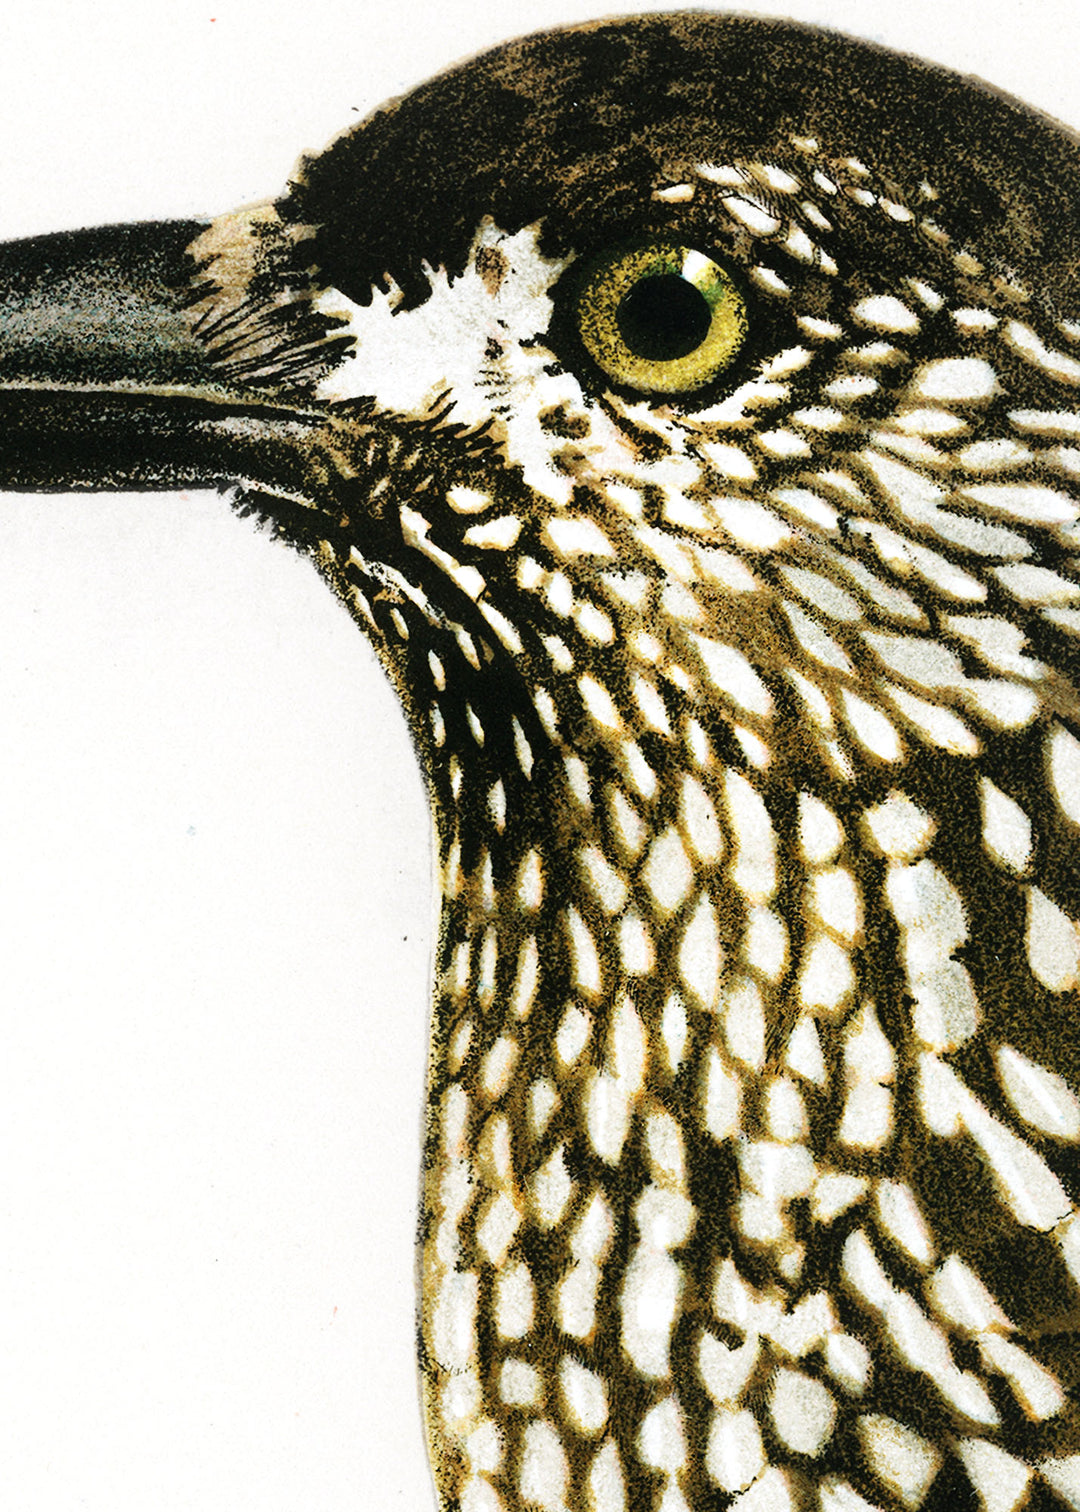 Fågeln Nötkråka på klassisk vintage poster/affisch